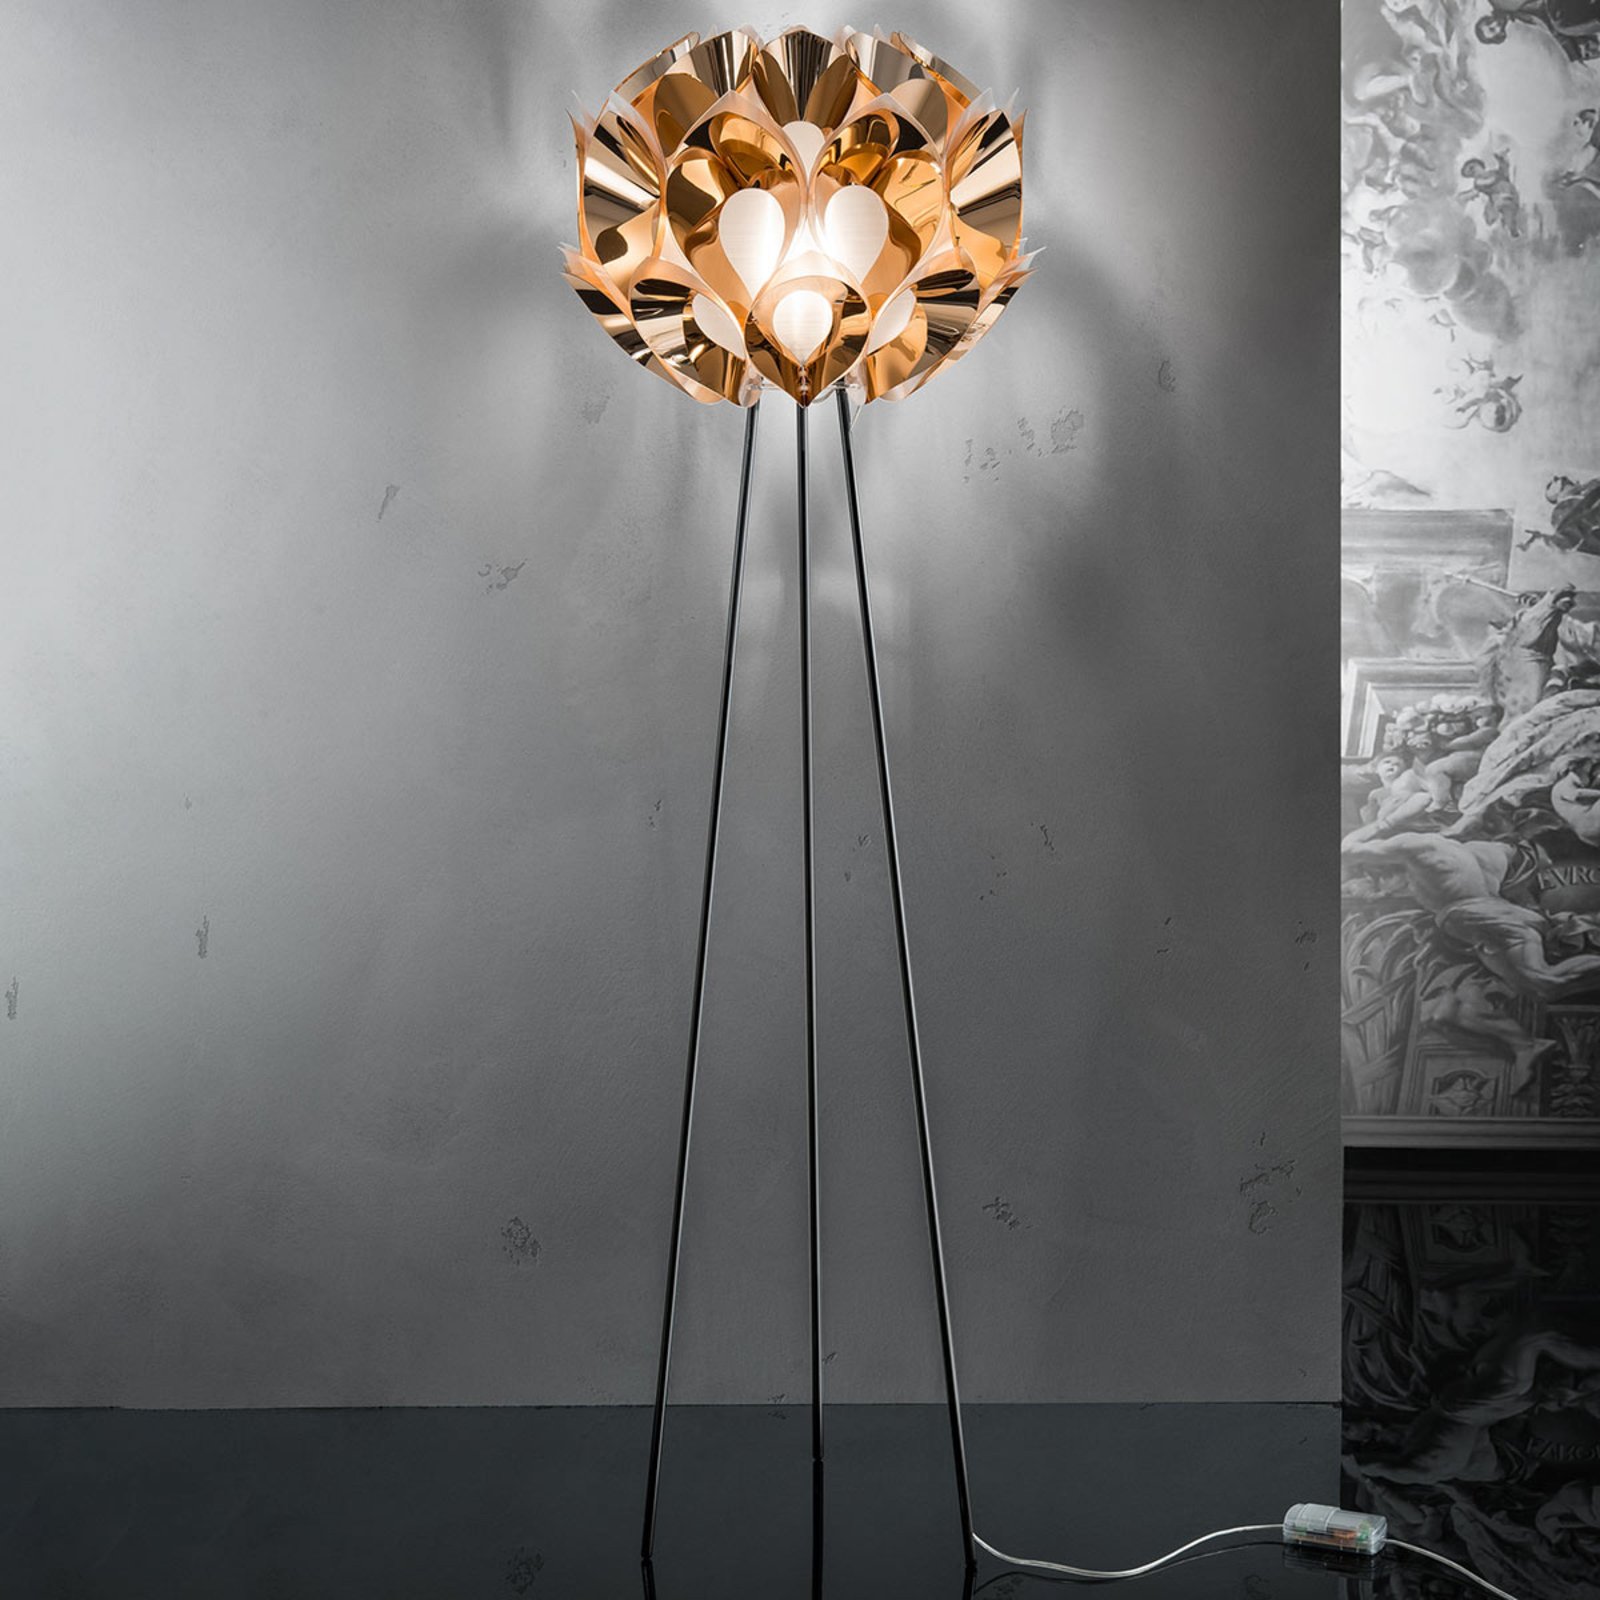 Slamp Flora - lámpara de pie de diseño, cobre